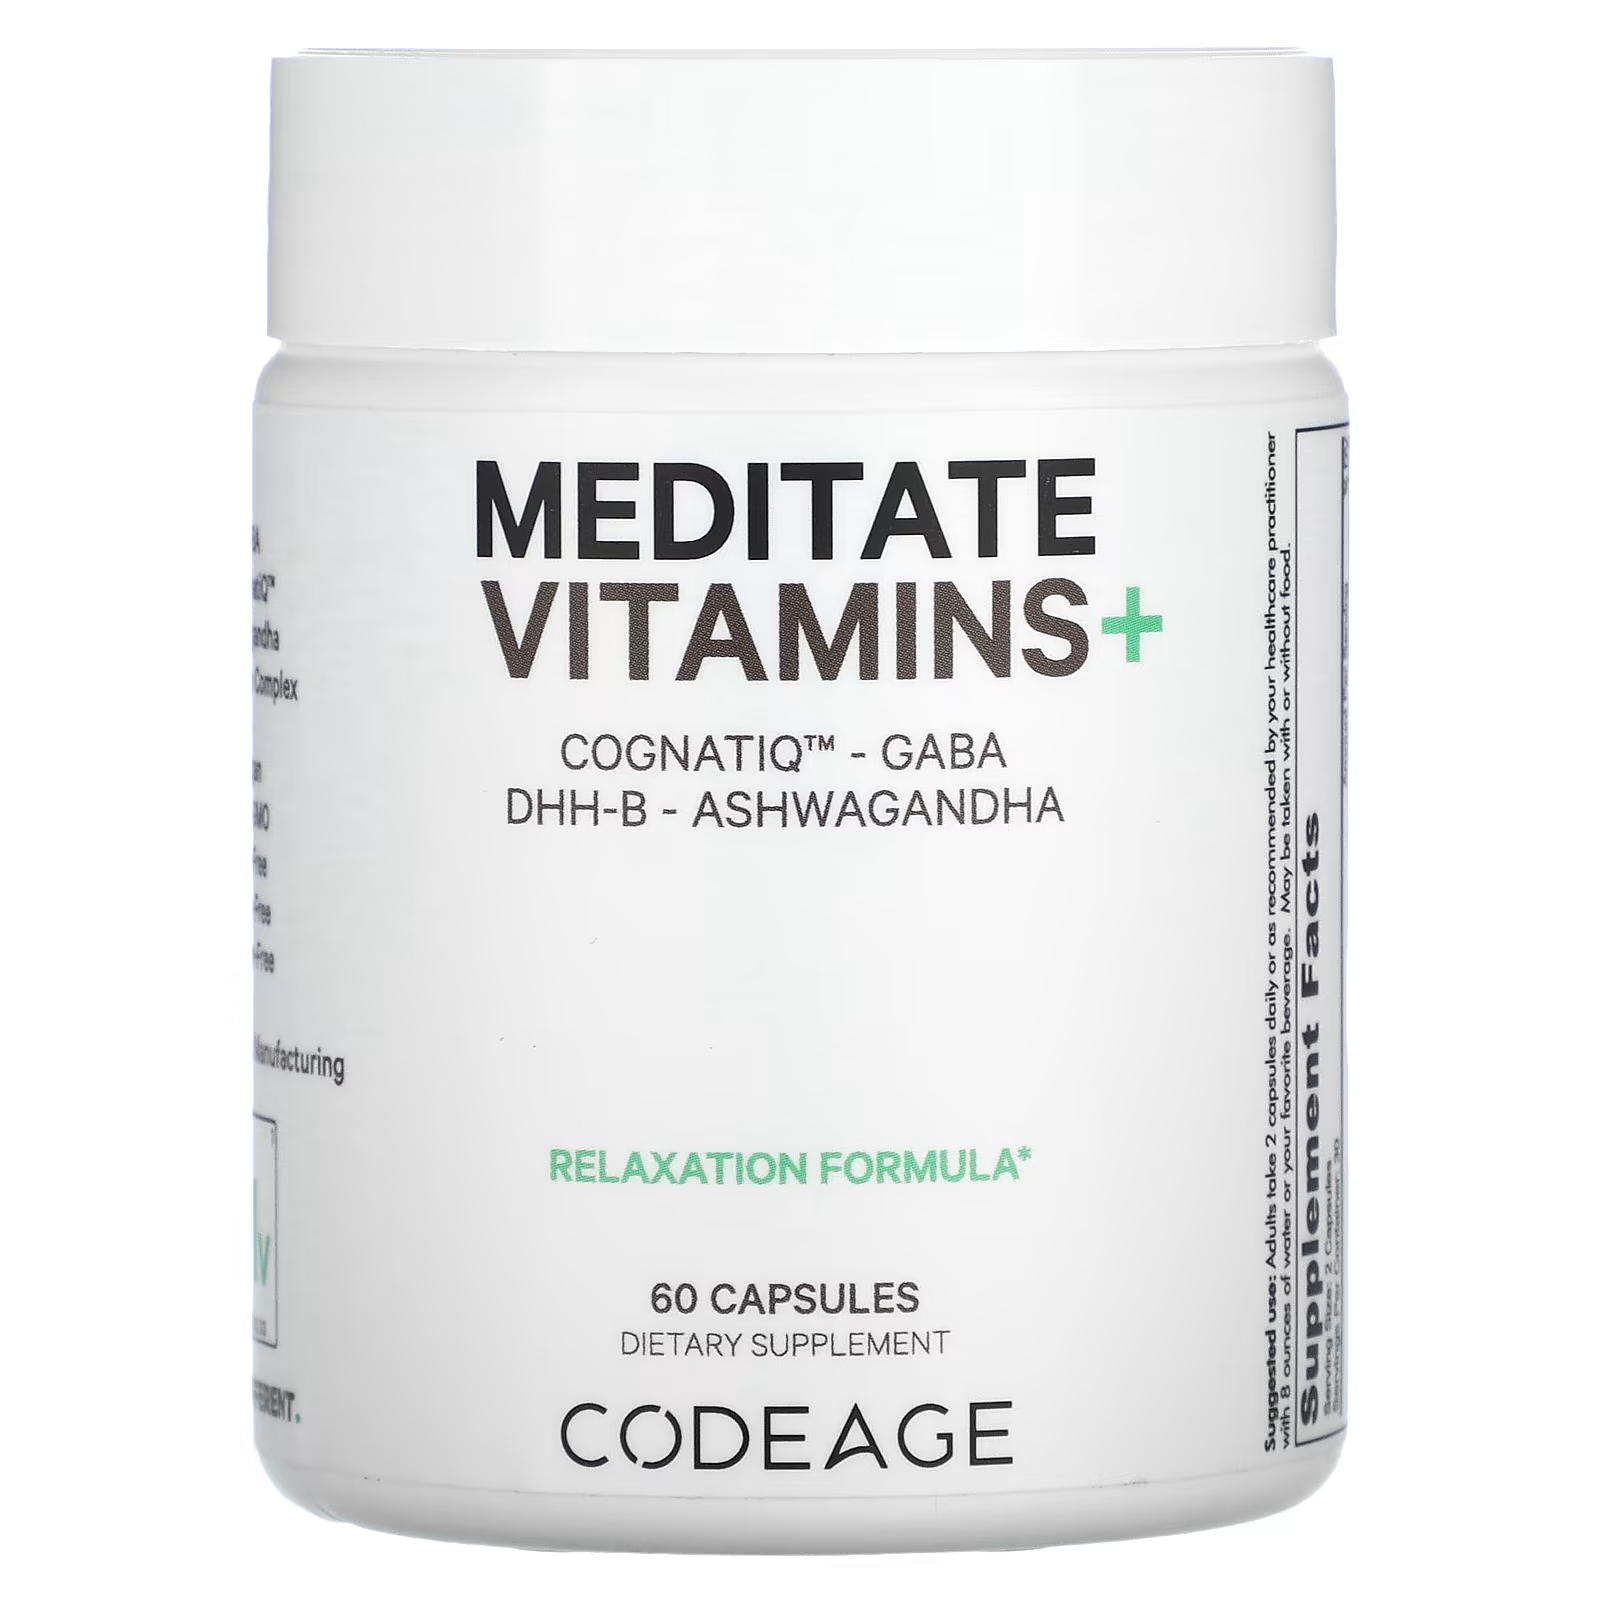 Пищевая добавка Codeage Meditate Витамины+ CognatiQ GABA DHH-B без сои, 60 капсул подарочный диплом сертификат соответствия невесты